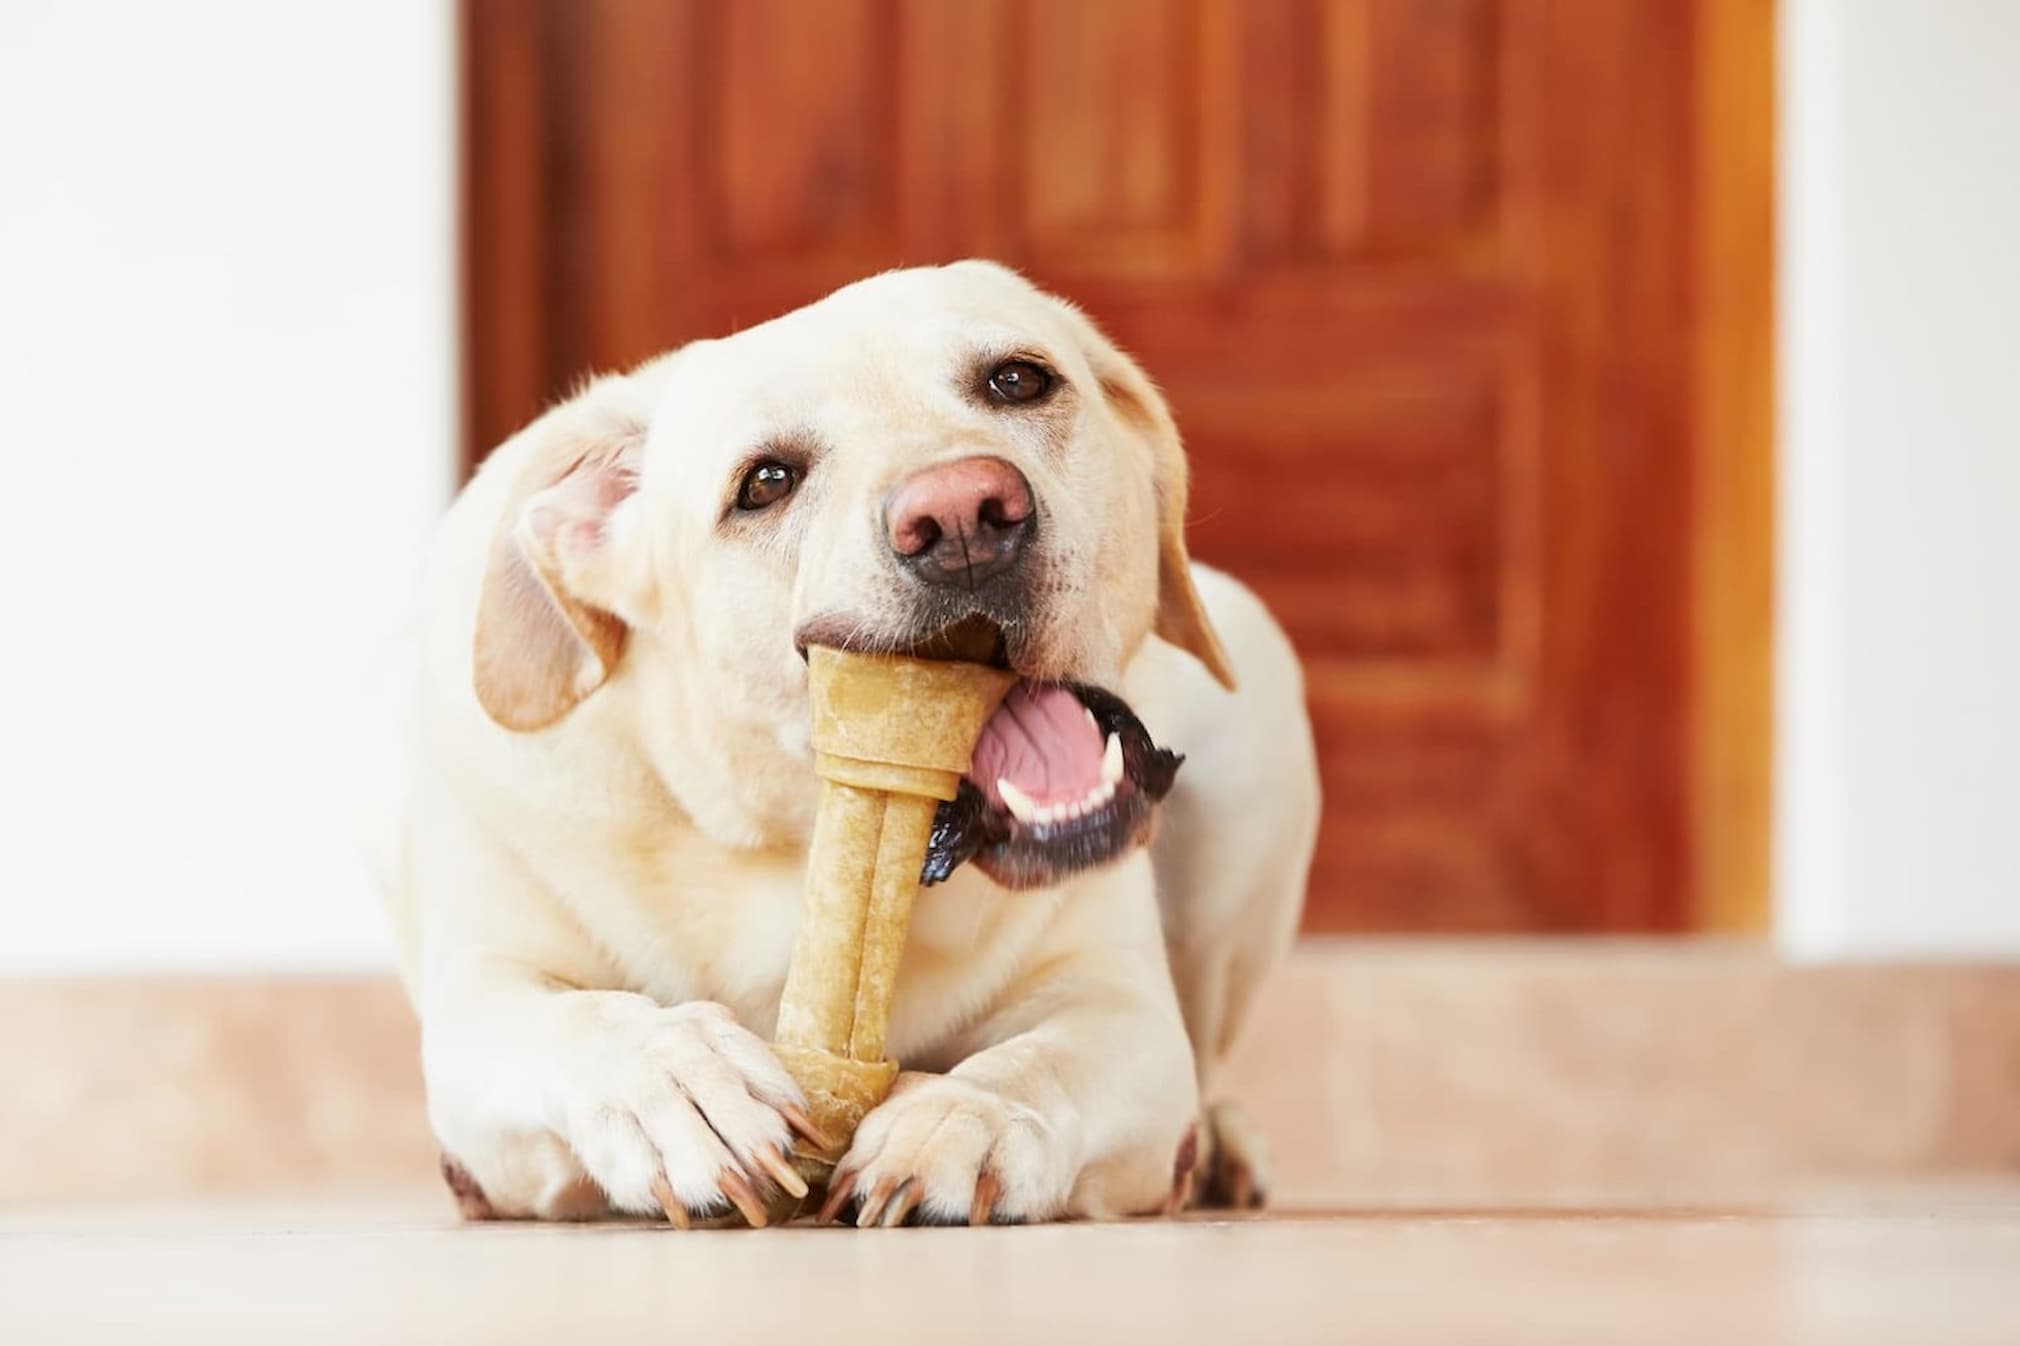 Dog eating dog bone